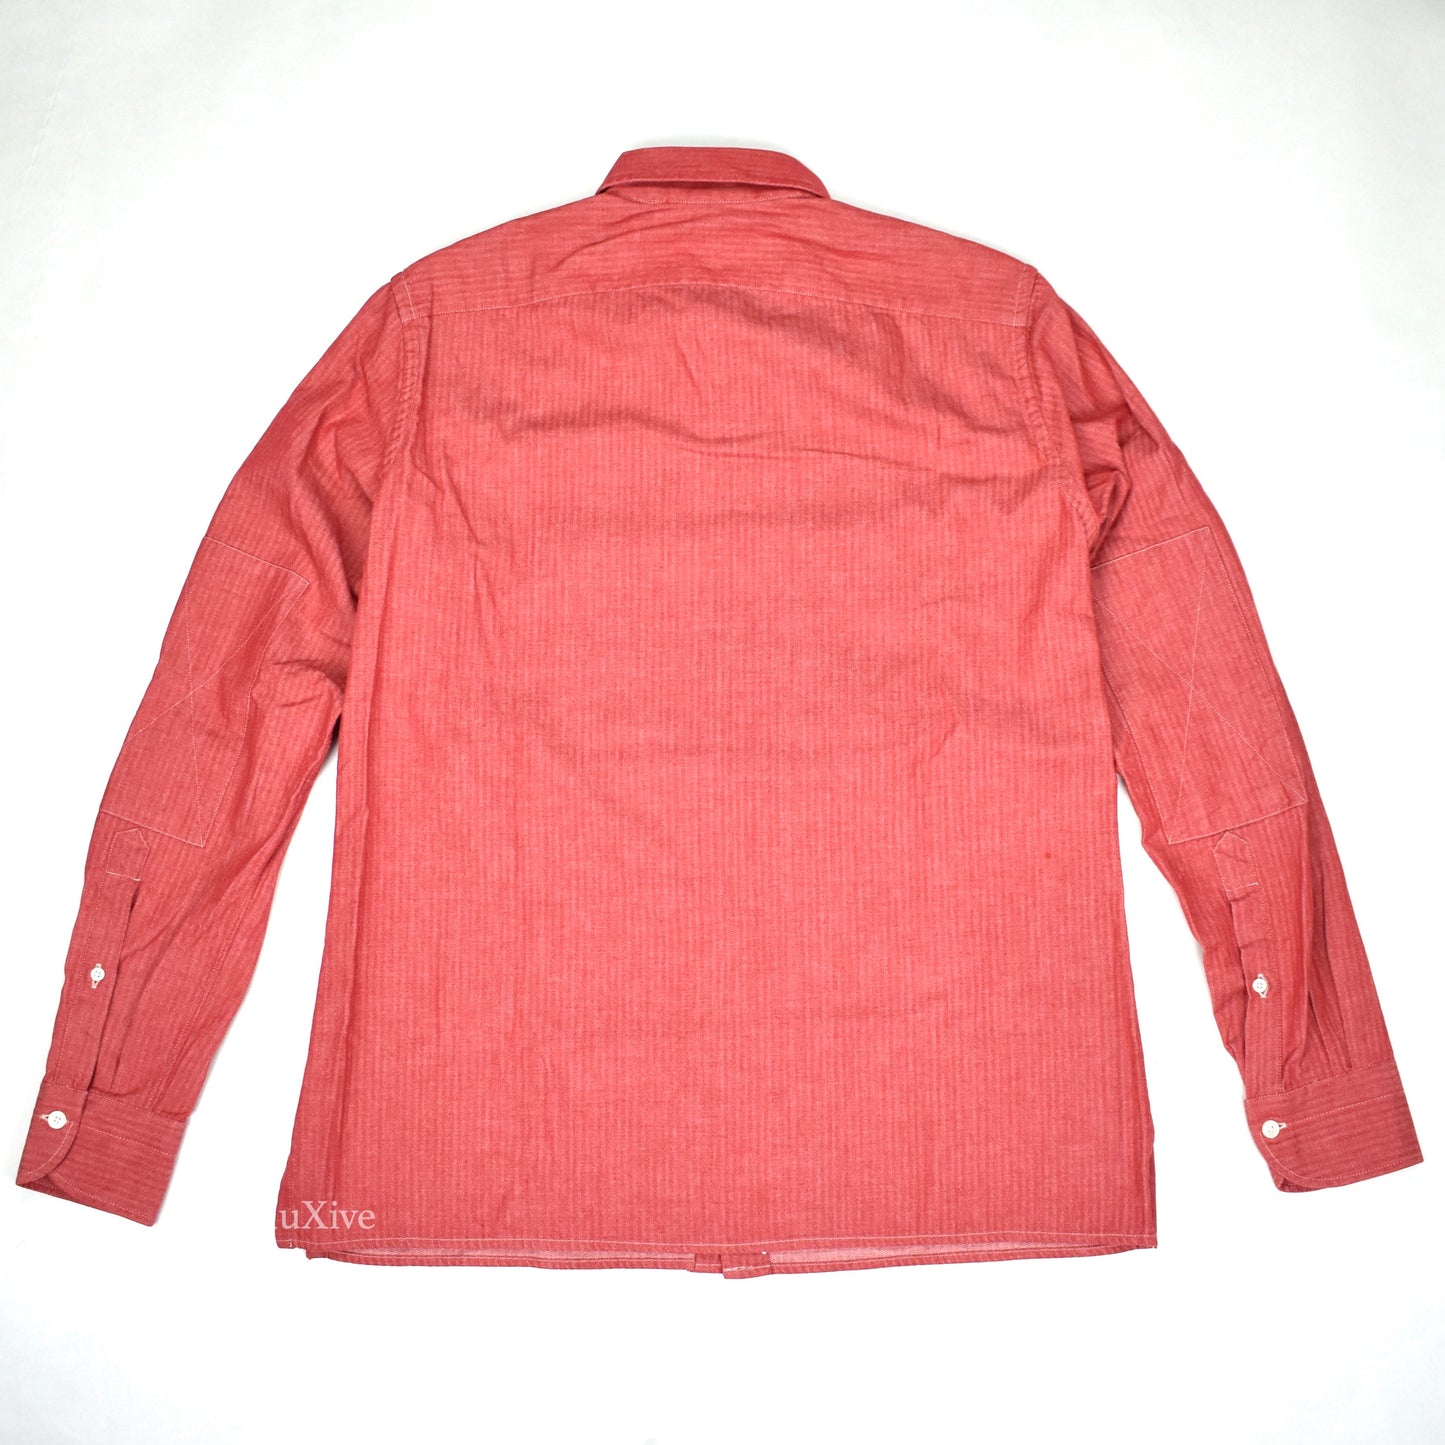 Boglioli - Red Herringbone Woven Cotton Button Down Shirt